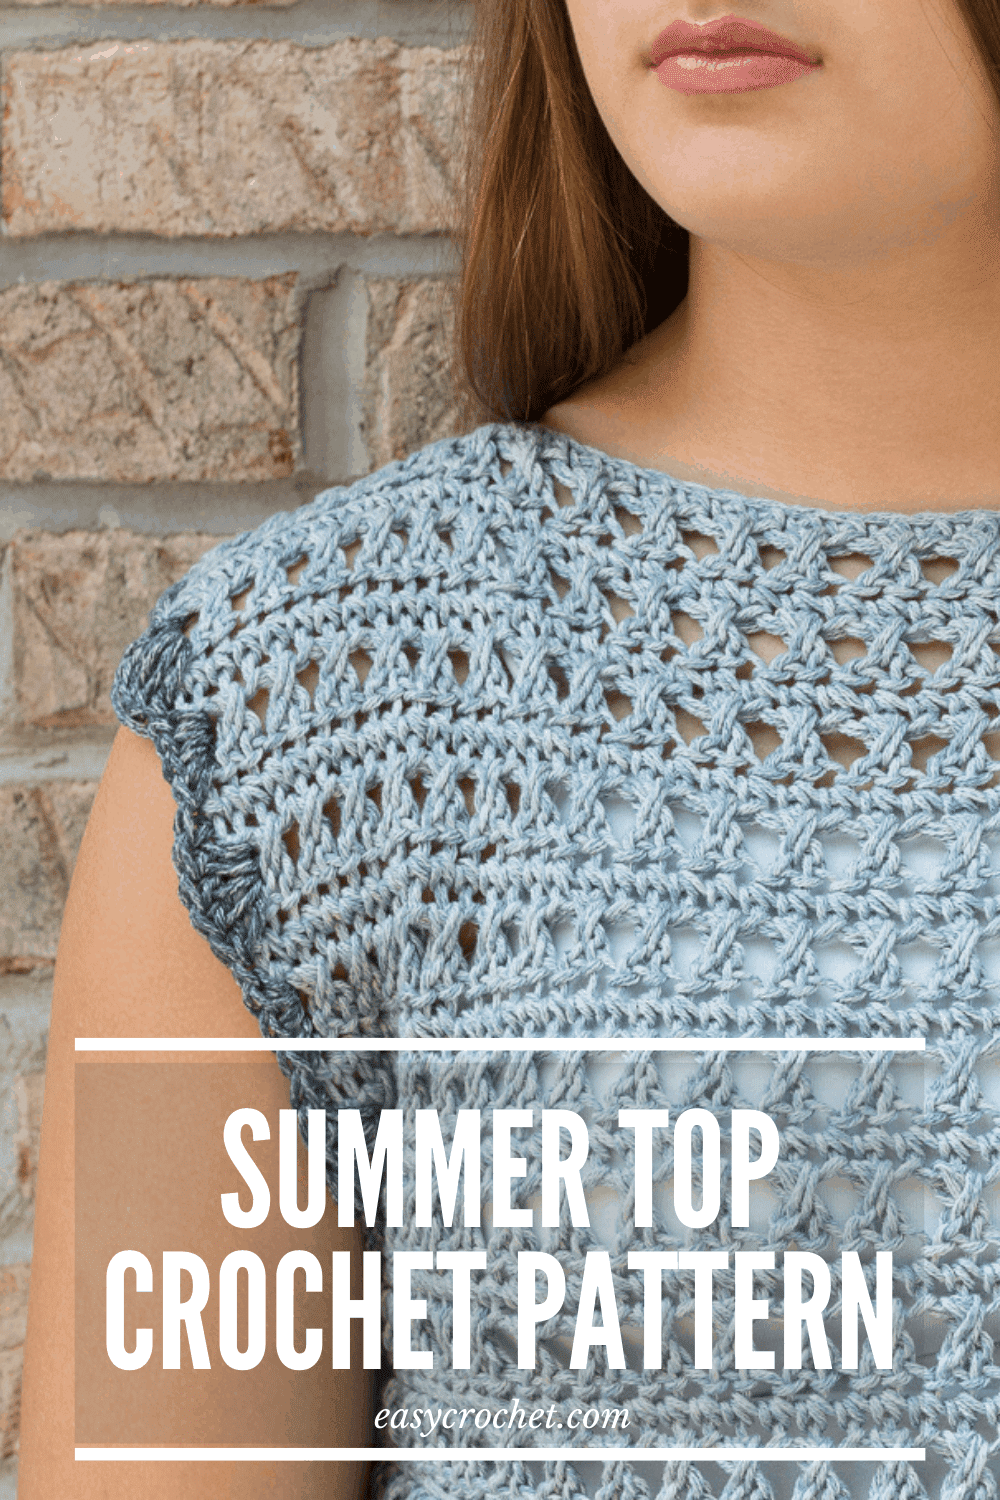 Free Crochet Top Pattern in SIX different sizes! Find the pattern at easycrochet.com #crochettop #freecrochetpattern #crochet #rescuedpawdesigns via @easycrochetcom